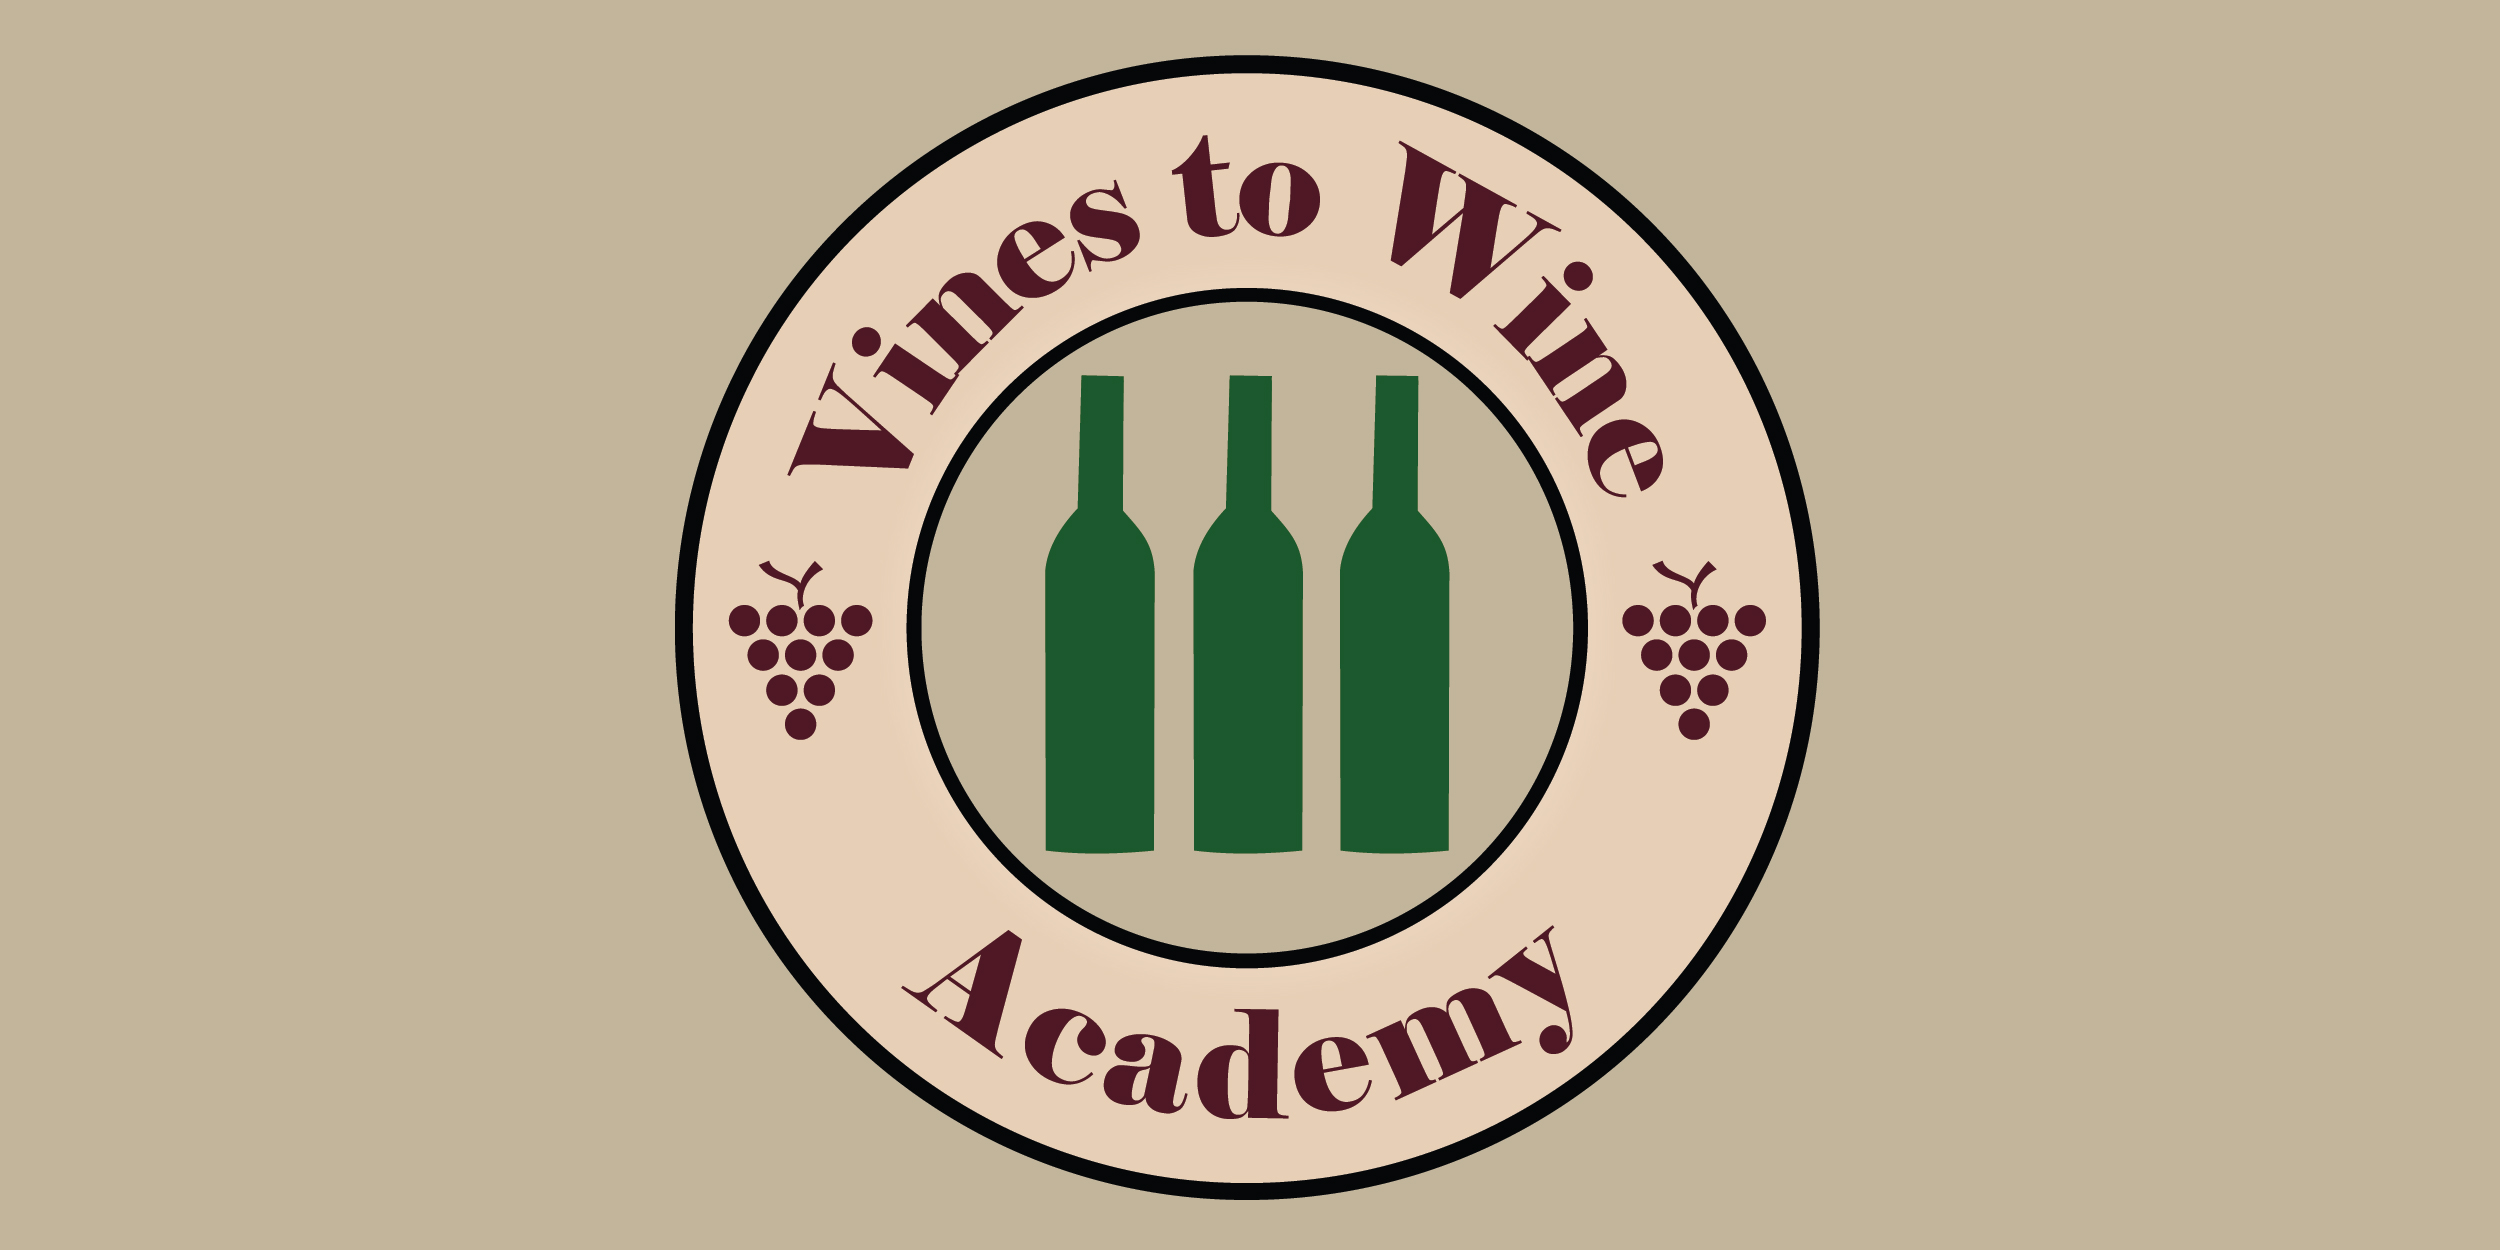 vines to wine-01.jpg